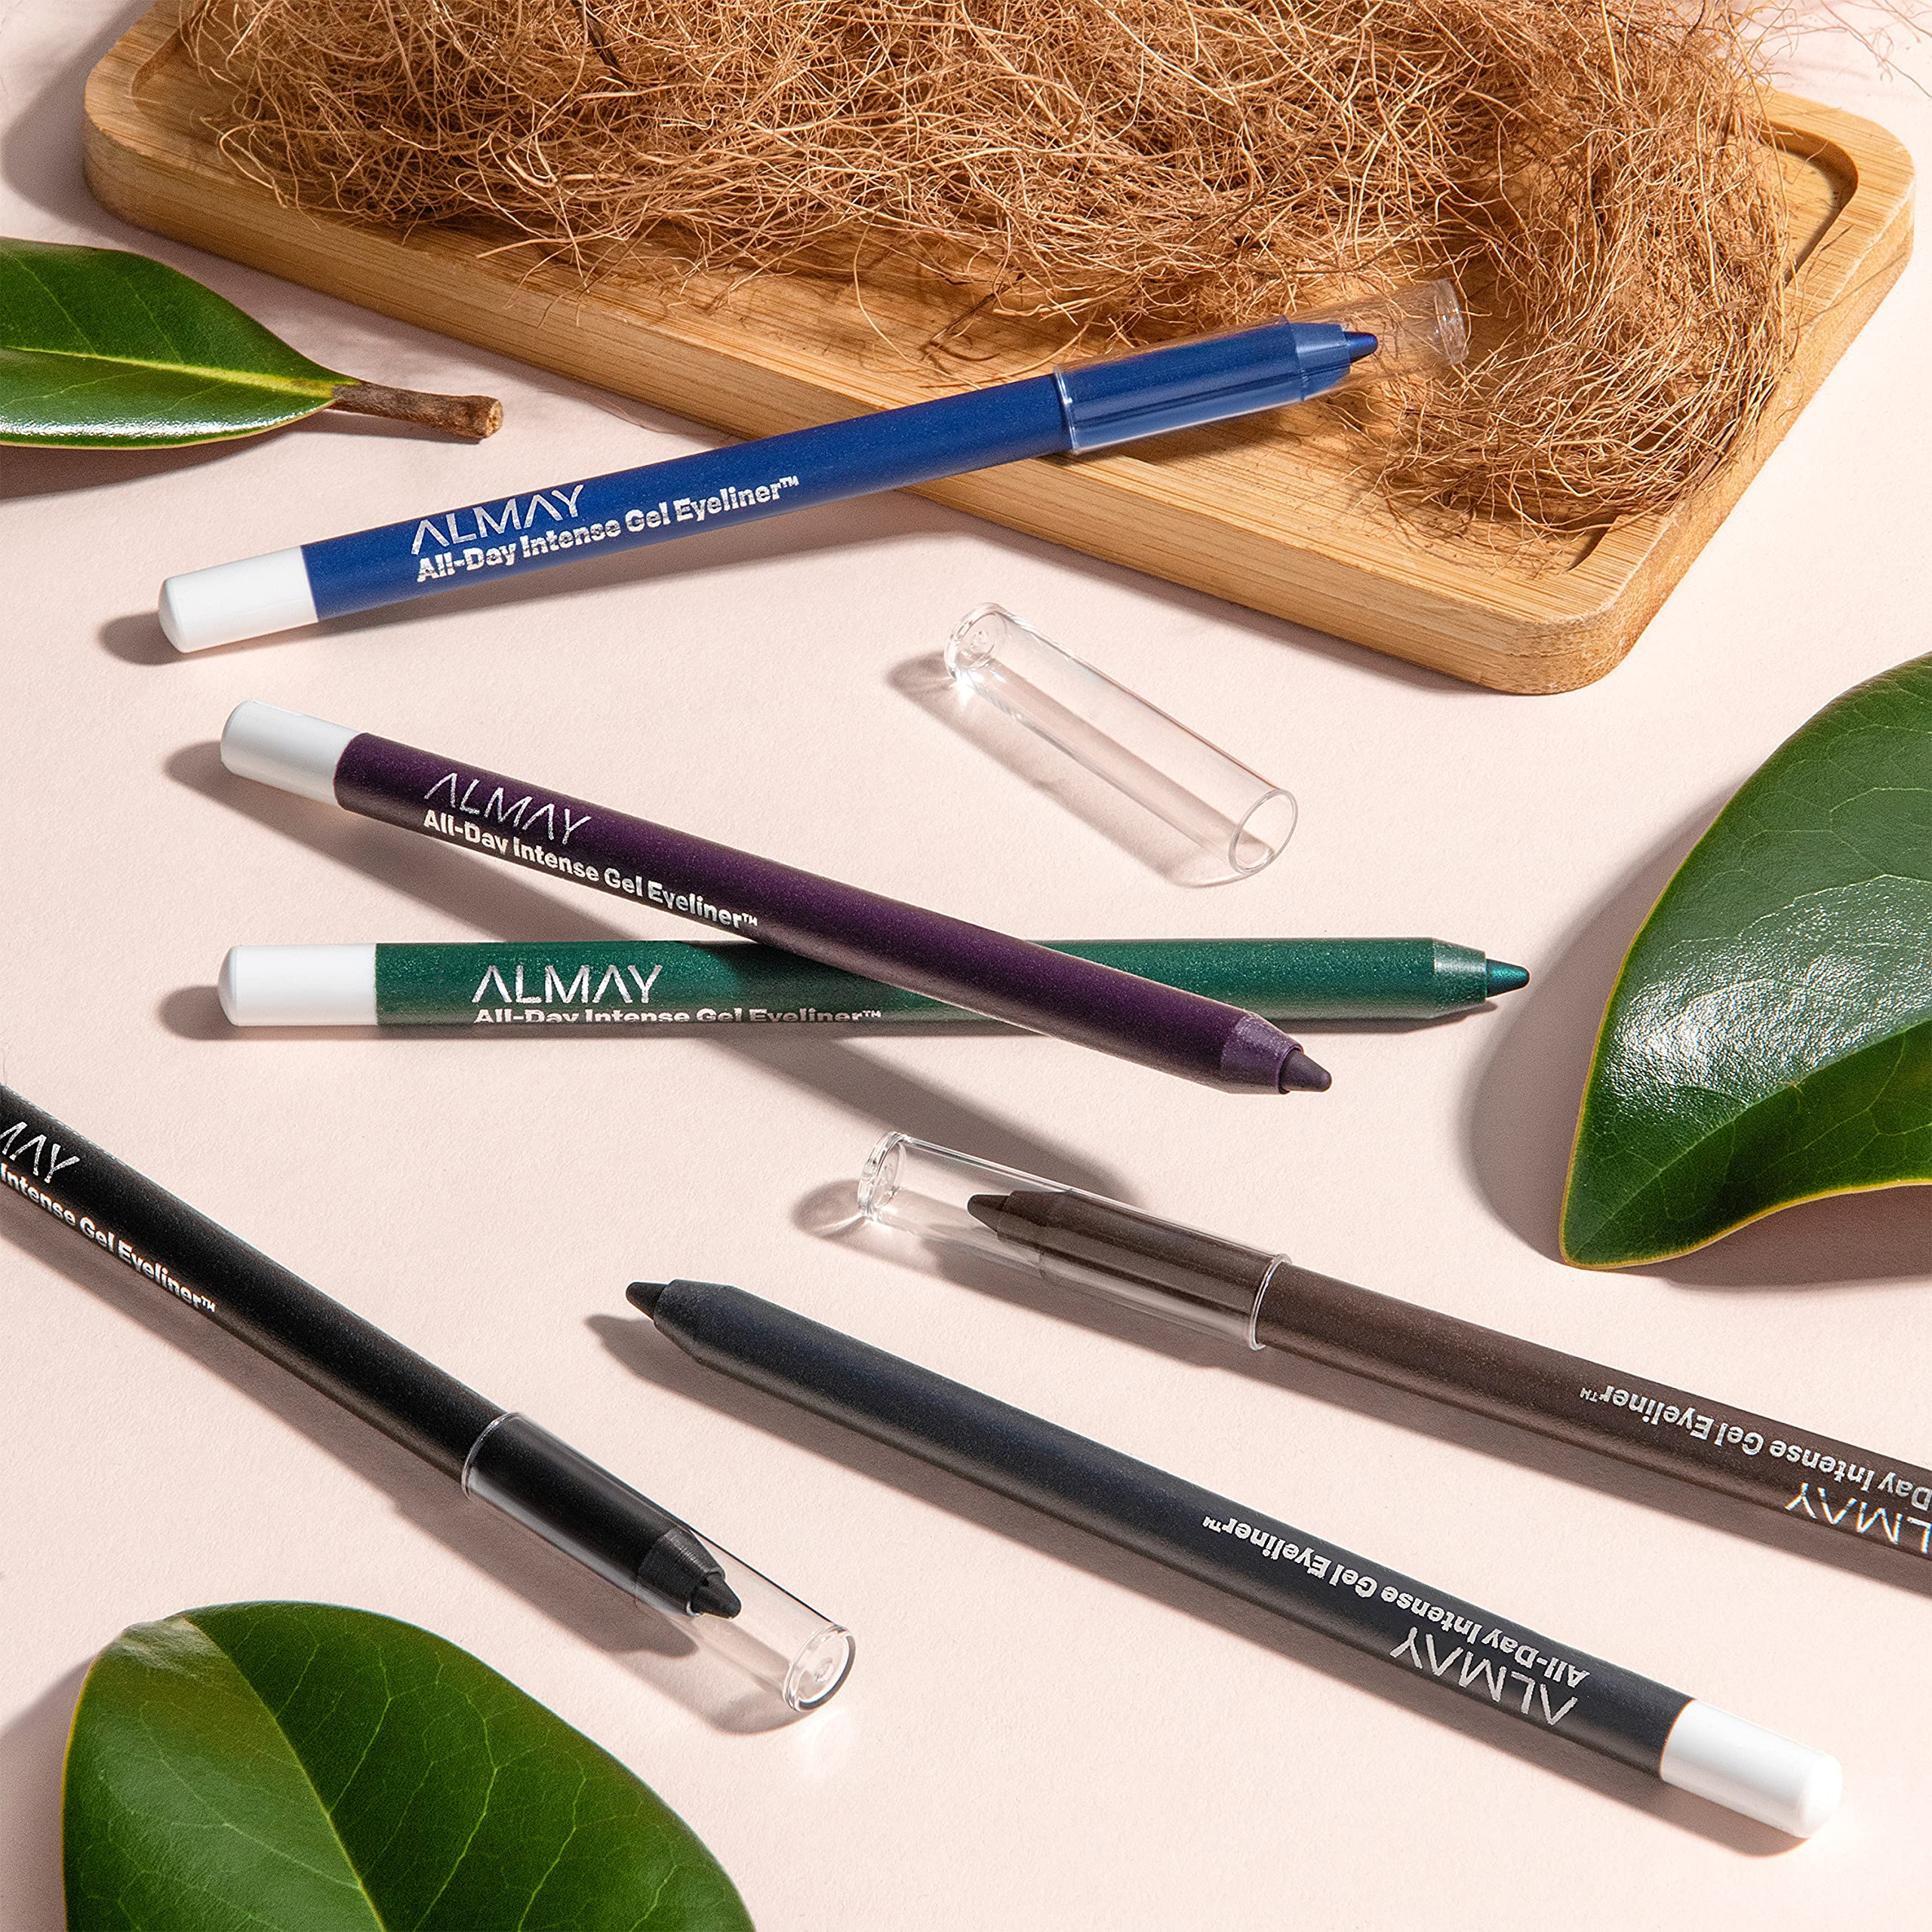 Gel Eyeliner by Almay, Waterproof, Fade-Proof Eye Makeup, Easy-to-Sharpen Liner Pencil, 130 Pure Plum, 0.045 Oz